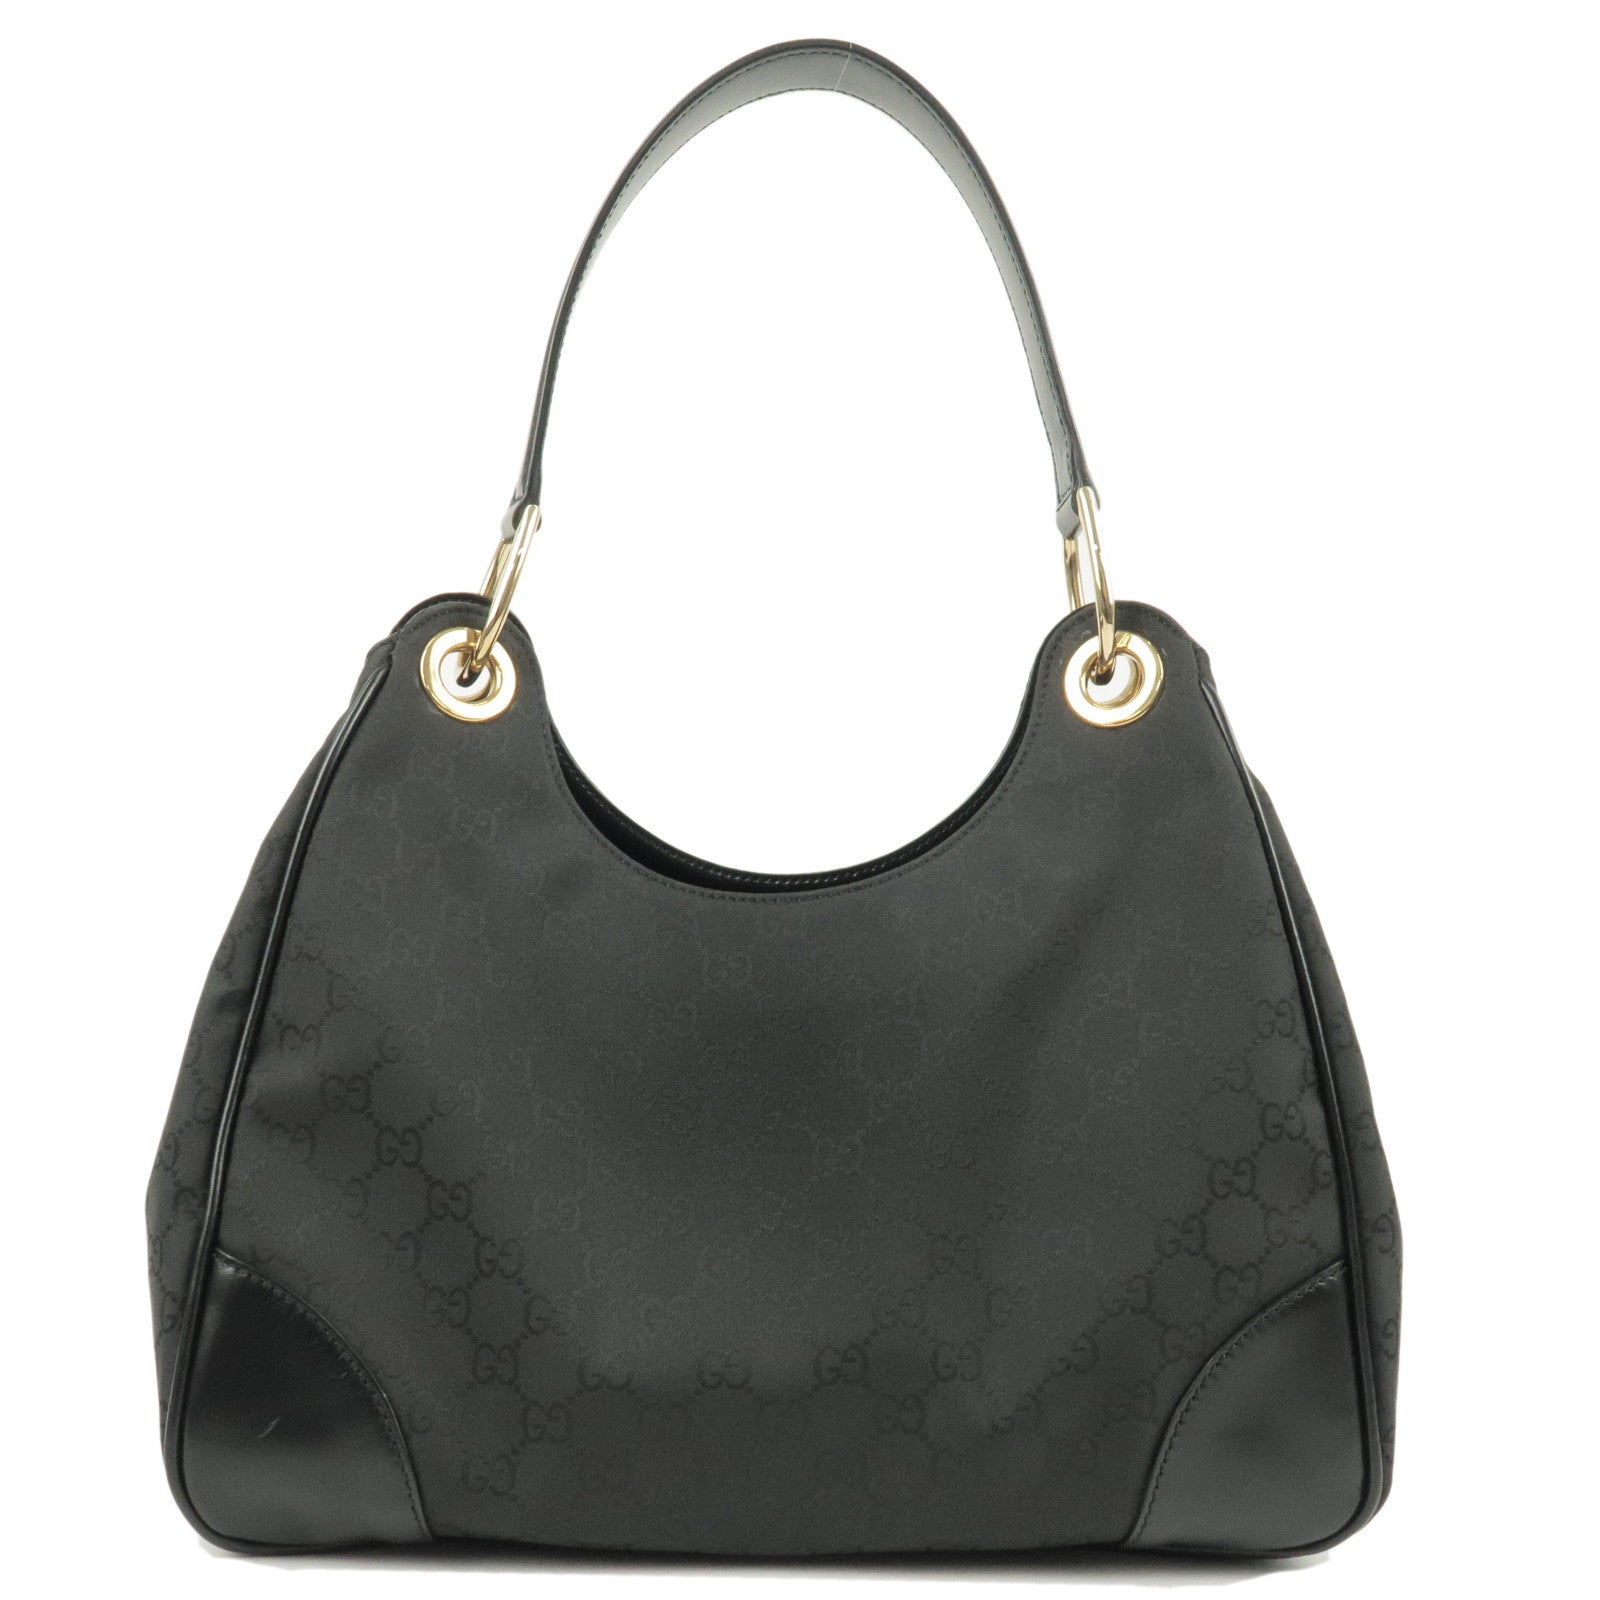 GUCCI-GG-Nylon-Leather-Shoulder-Bag-Hand-Bag-Black-257265